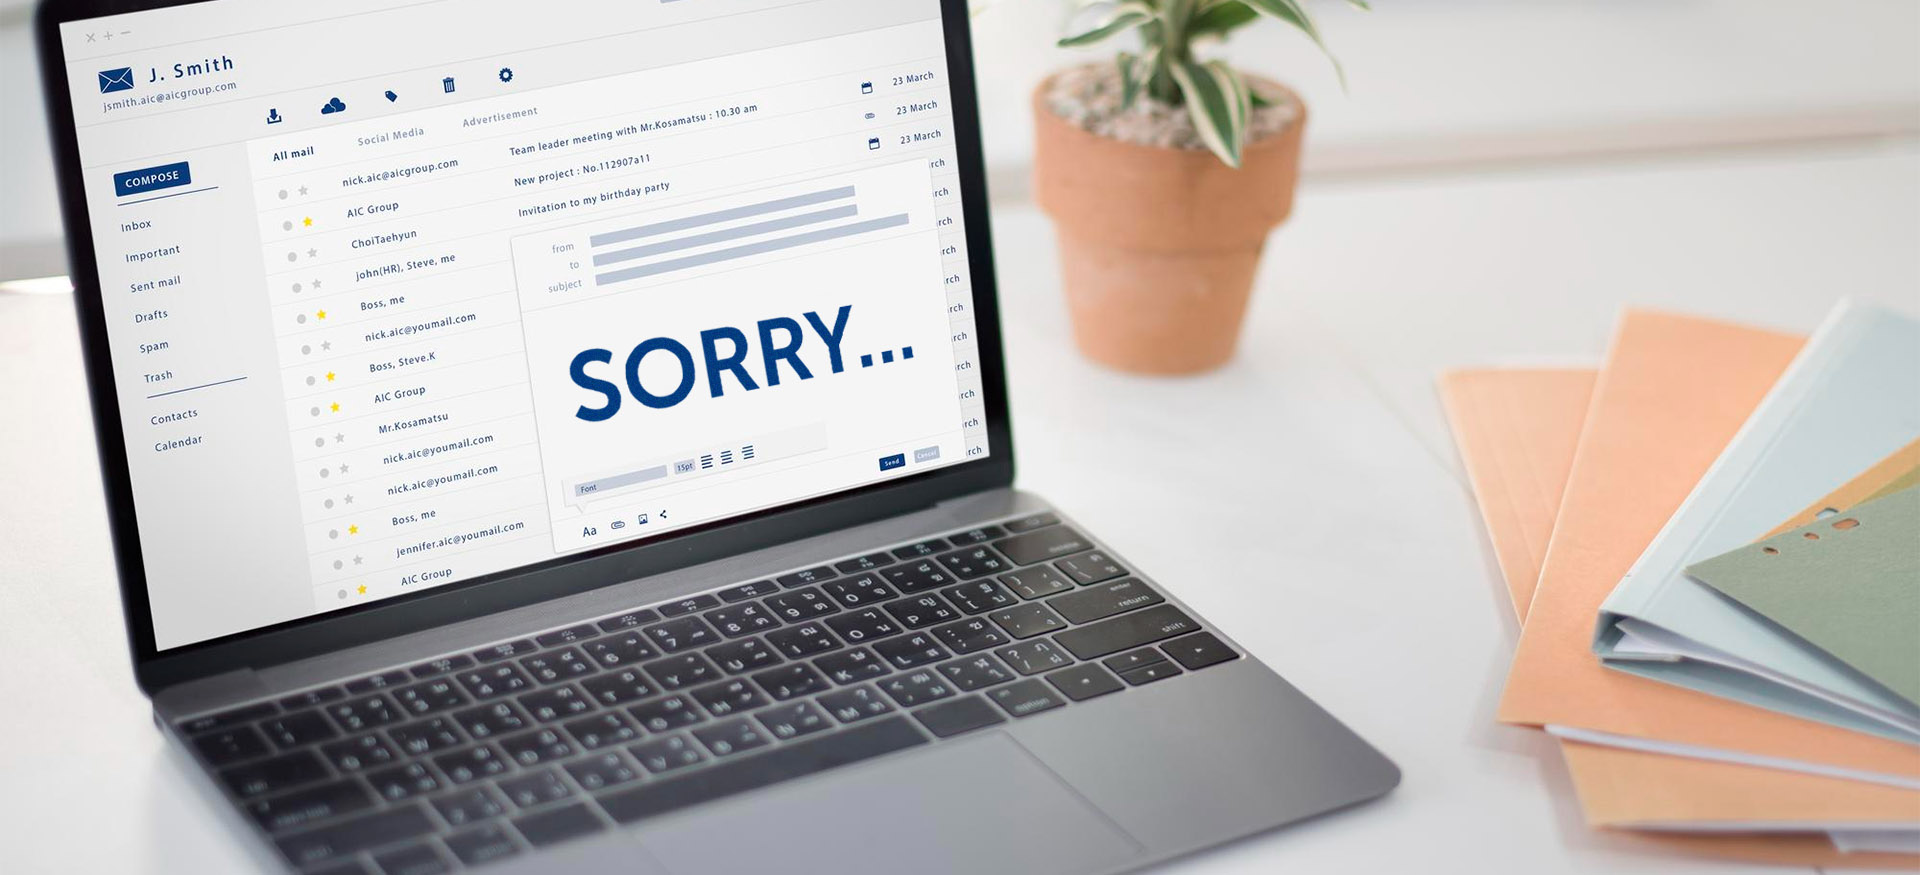 Как извиниться на английском в деловом письме?